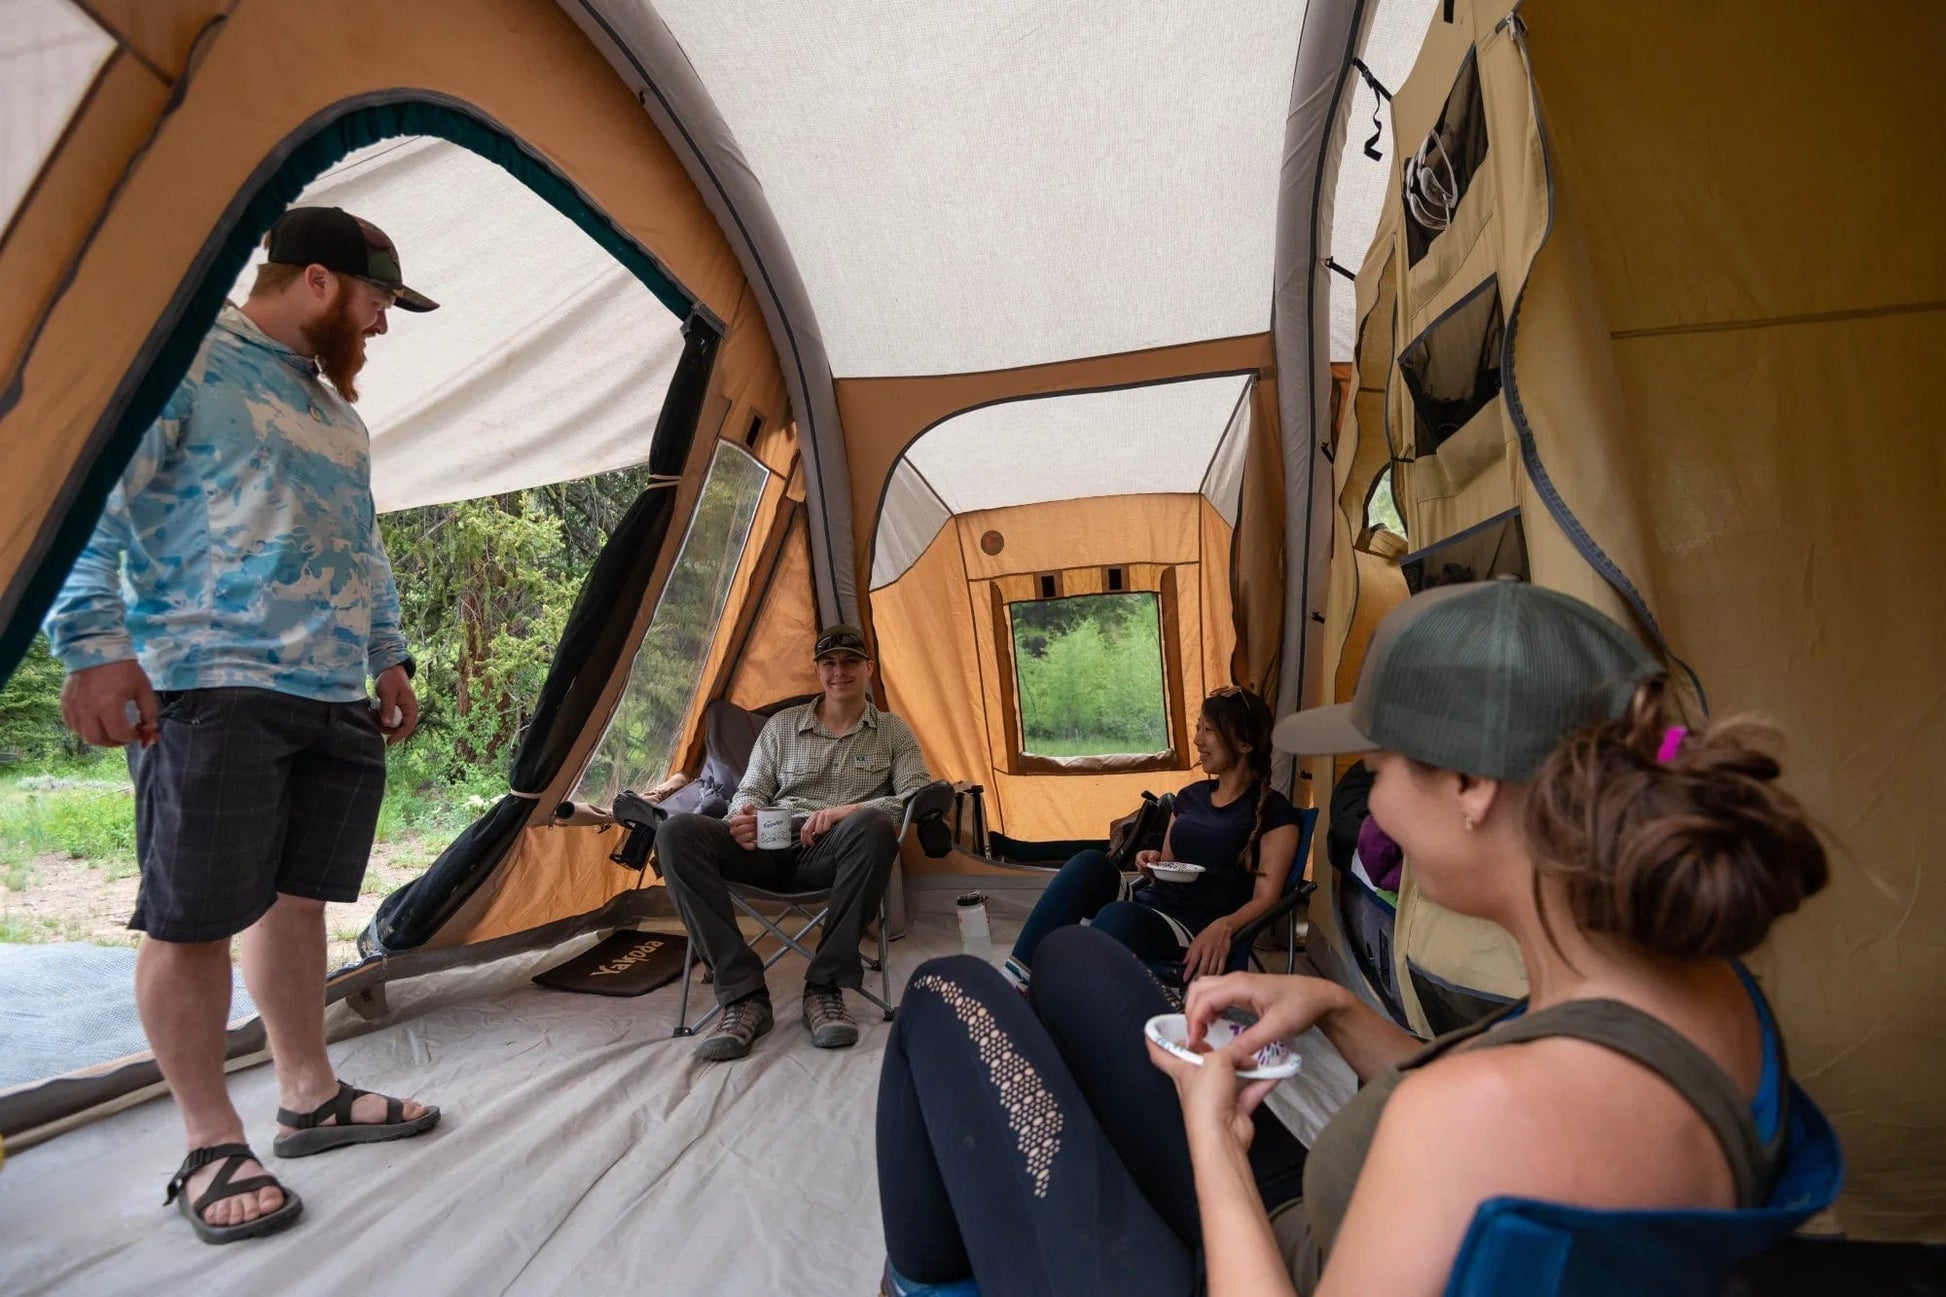 Wildcat Outdoor Gear Wildcat BOBCAT 500 Premium Family Camping Tent